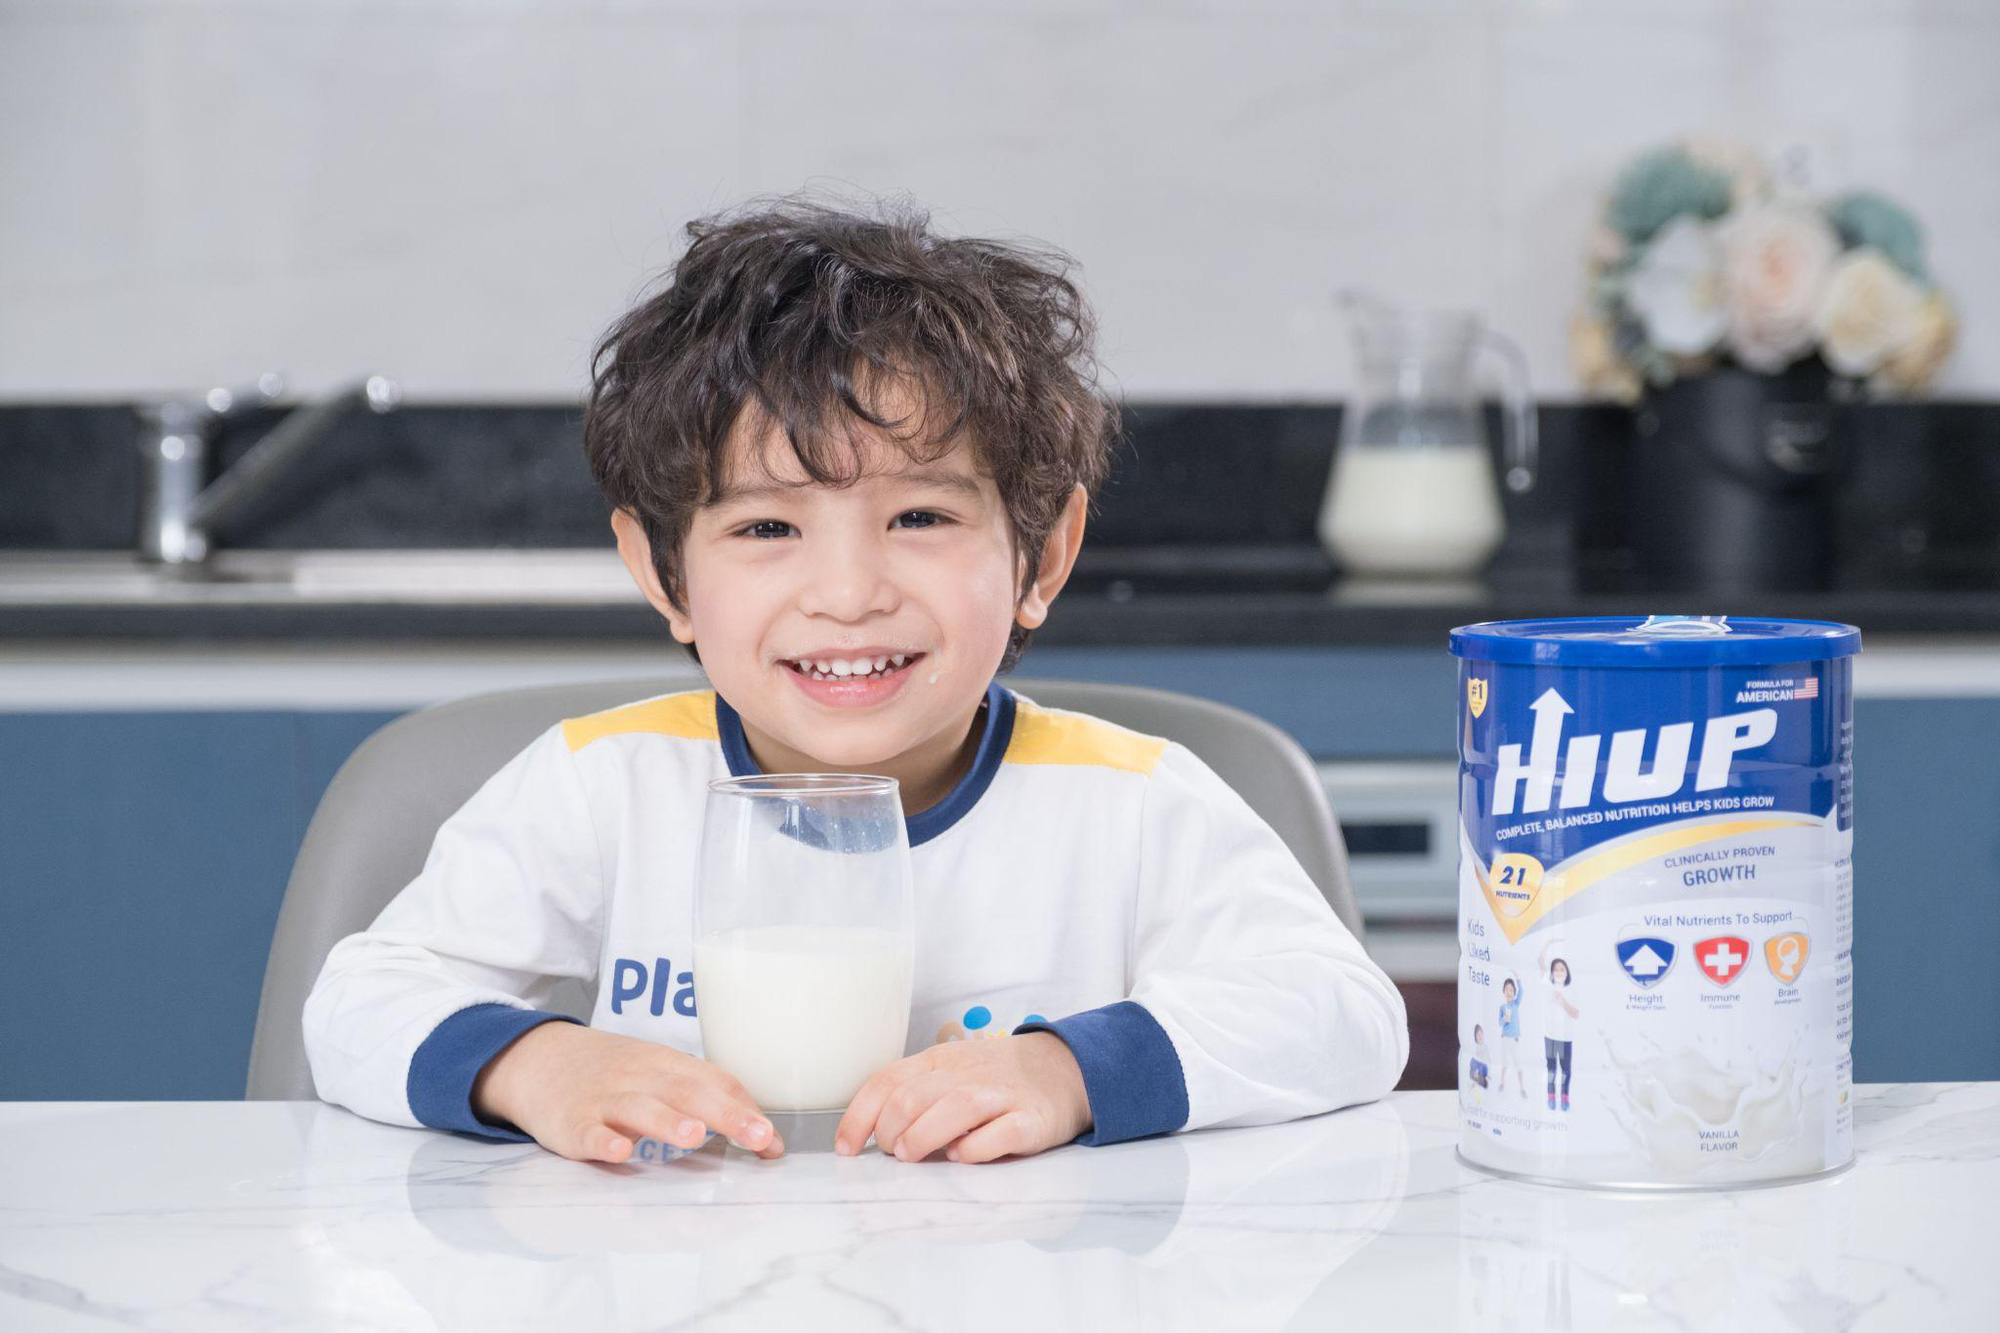 Giúp con cao lớn với sữa hỗ trợ tăng trưởng chiều cao HIUP - Ảnh 1.